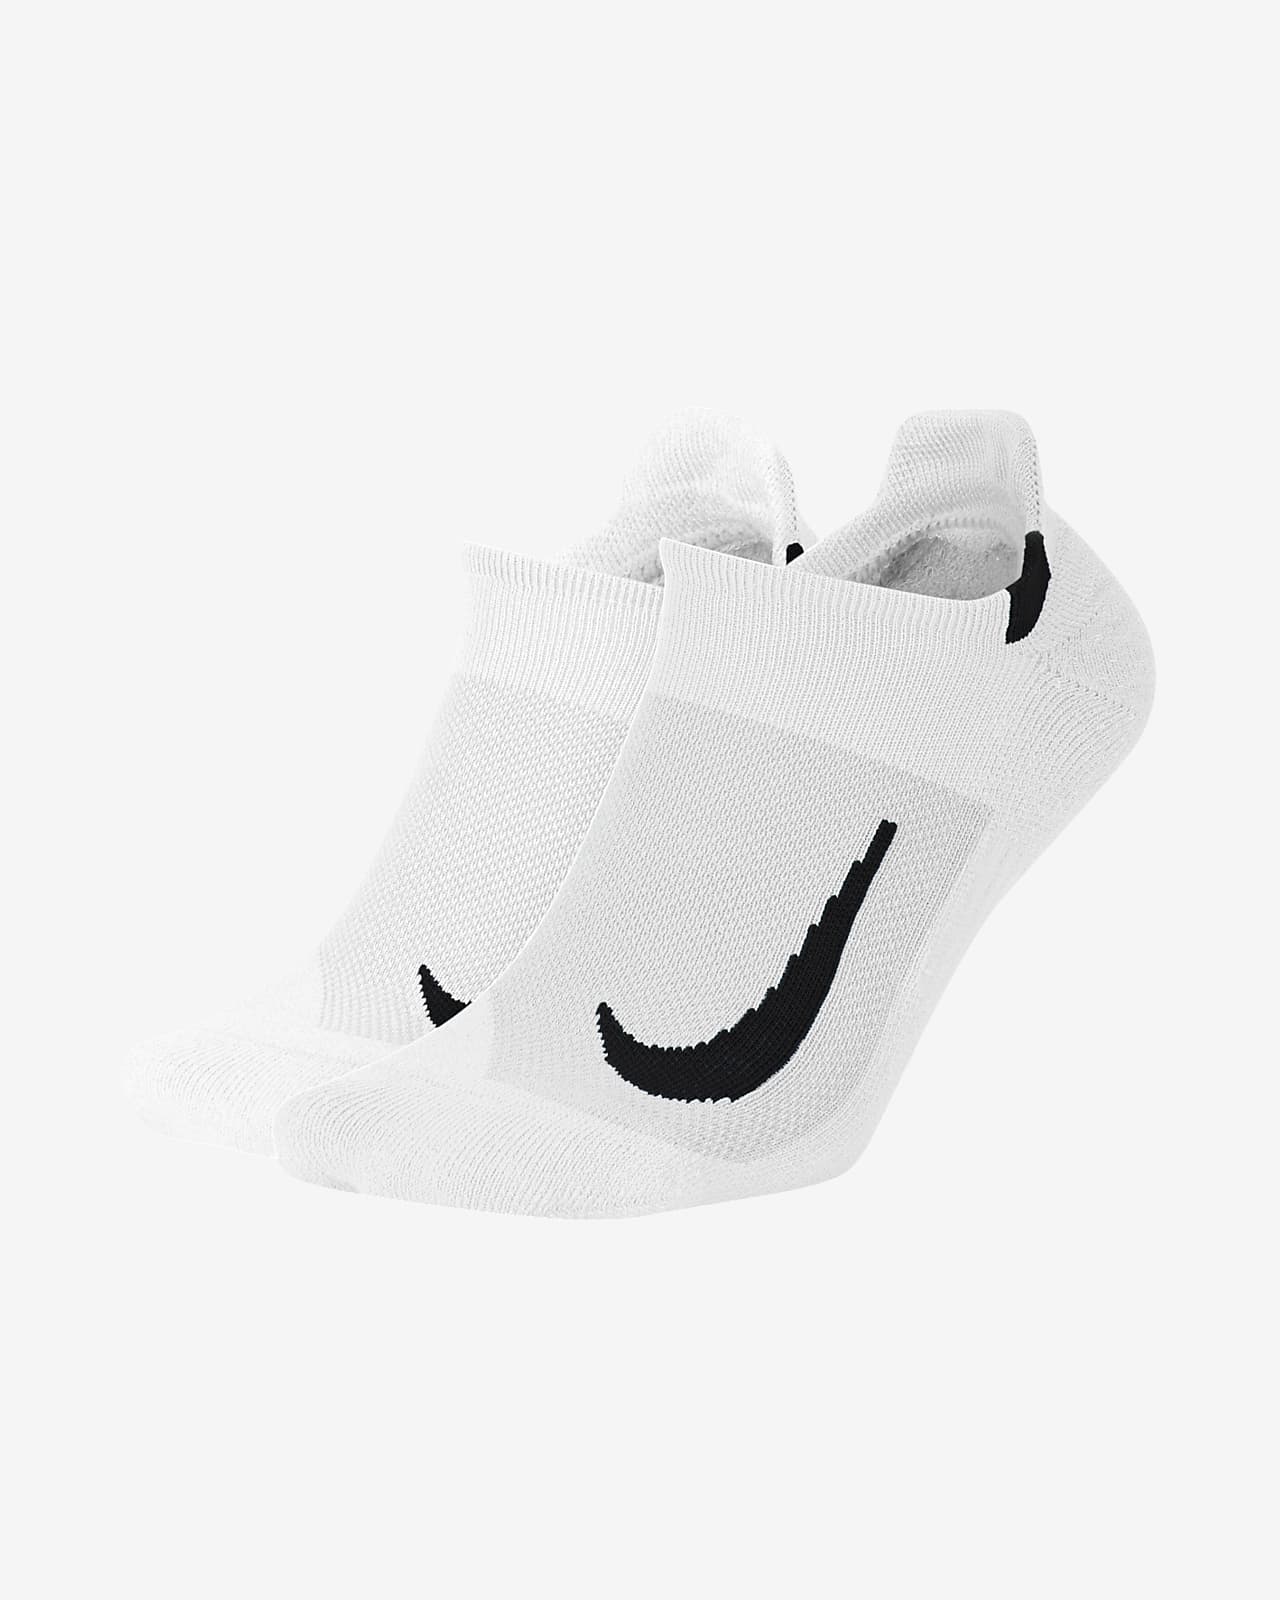 Χαμηλές κάλτσες για τρέξιμο Nike Multiplier (δύο ζευγάρια)